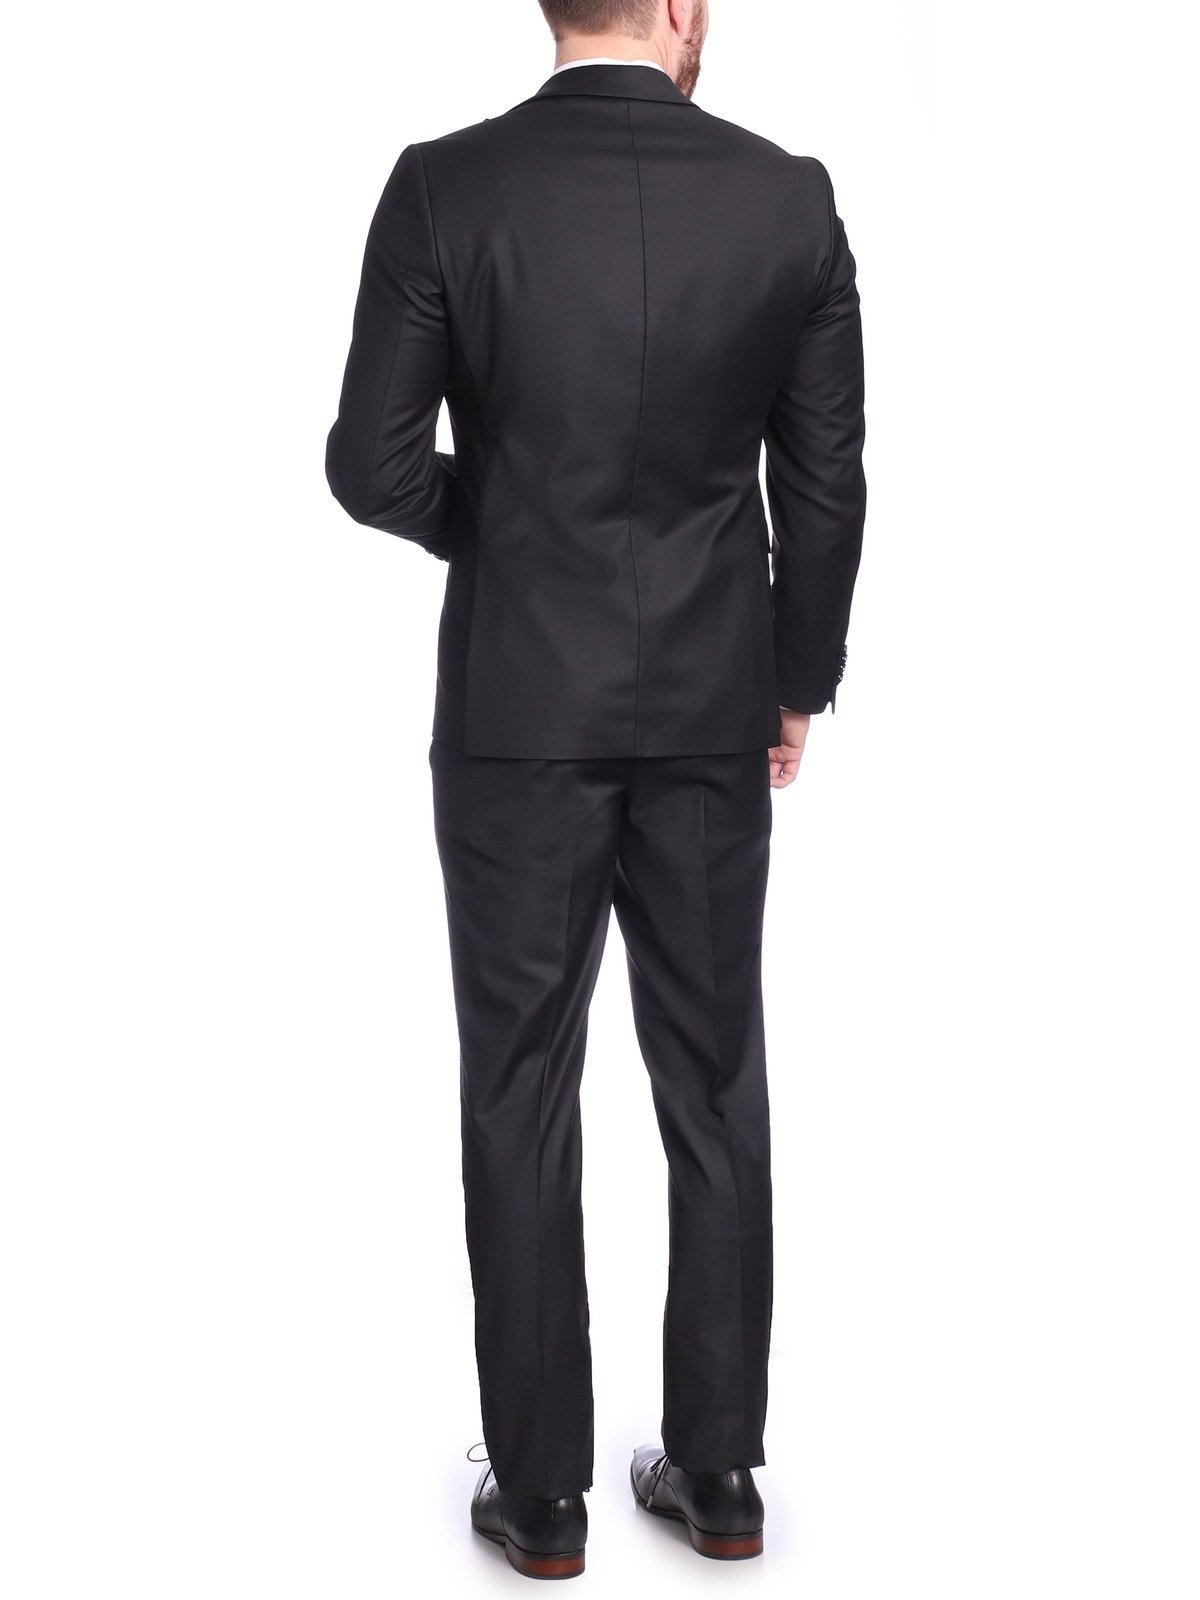 Carducci SUITS Carducci Mens Solid Black Wool Blend Slim Fit Suit With Peak Lapels